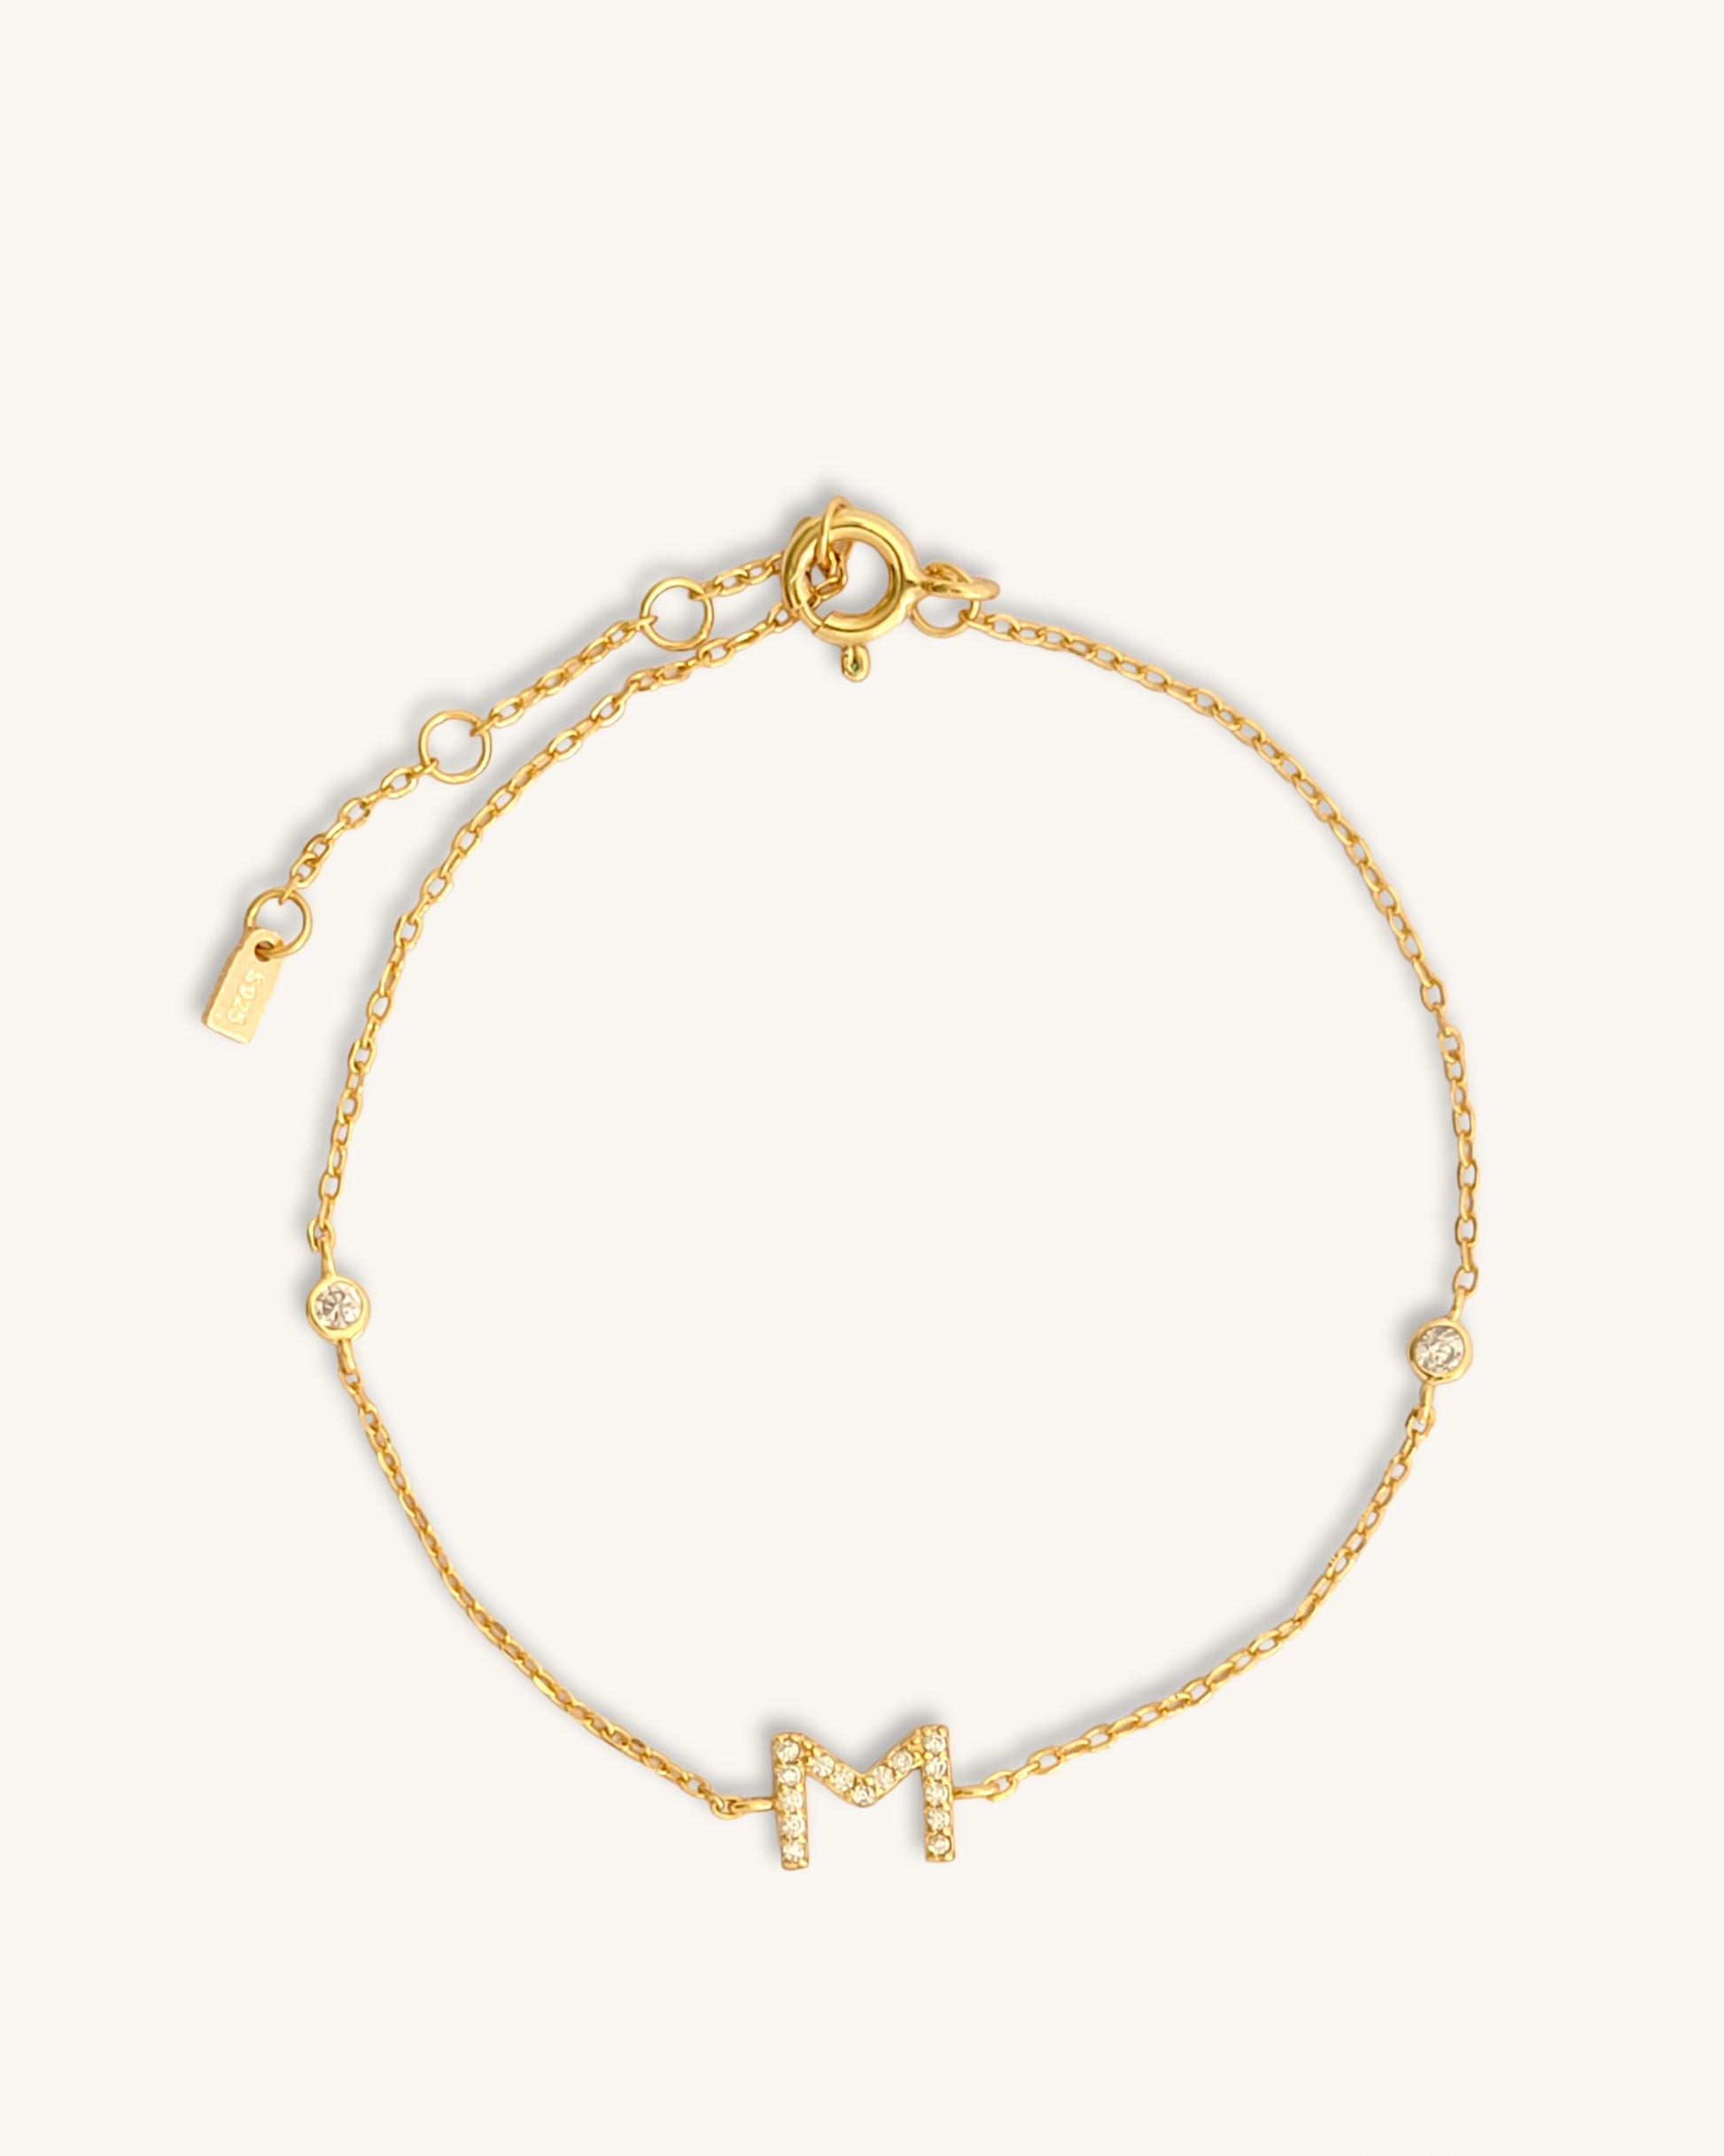 Louis Vuitton LV & Me Bracelet, Letter M, Gold, One Size